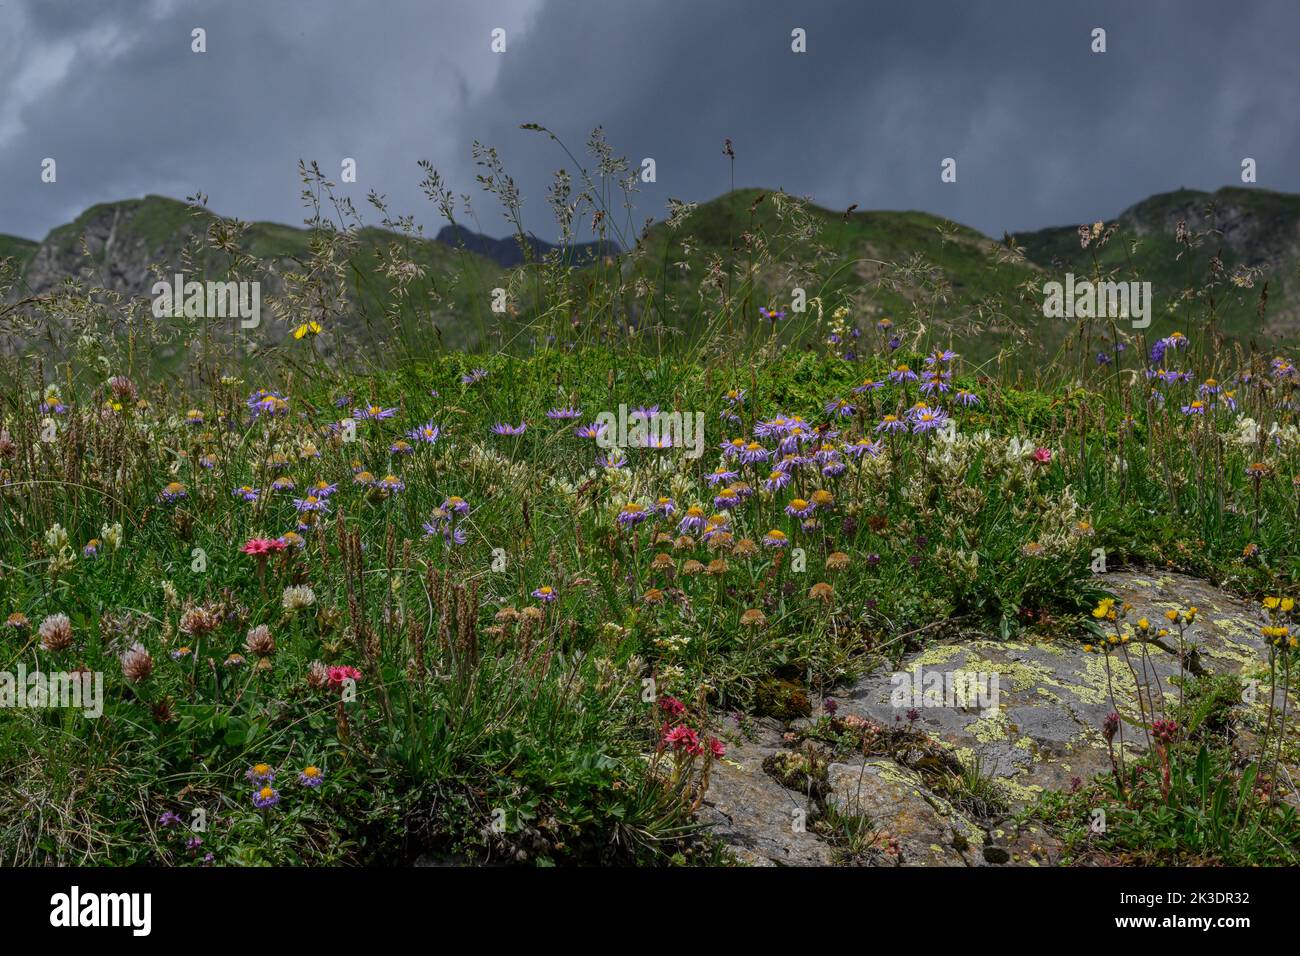 Alpes italiennes au-dessus de Domadossola en fleur, avec Aster alpin, Cobweb Houseleek, Clovers etc Banque D'Images